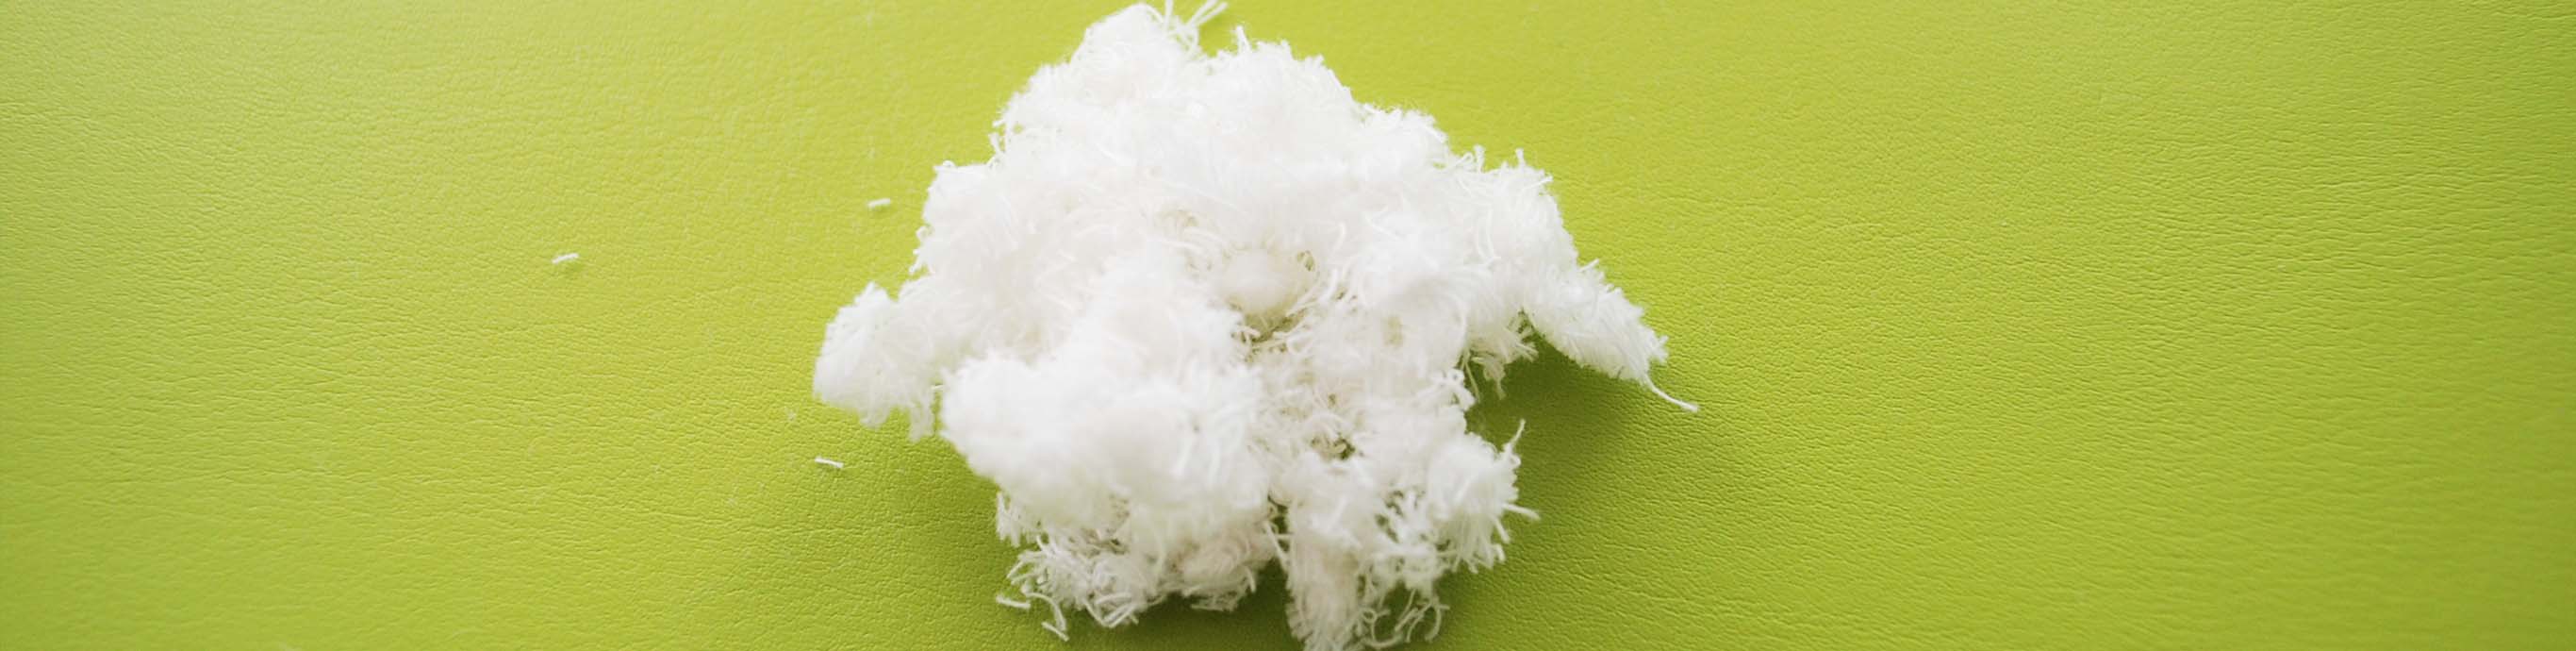 Cotton Biodegradability